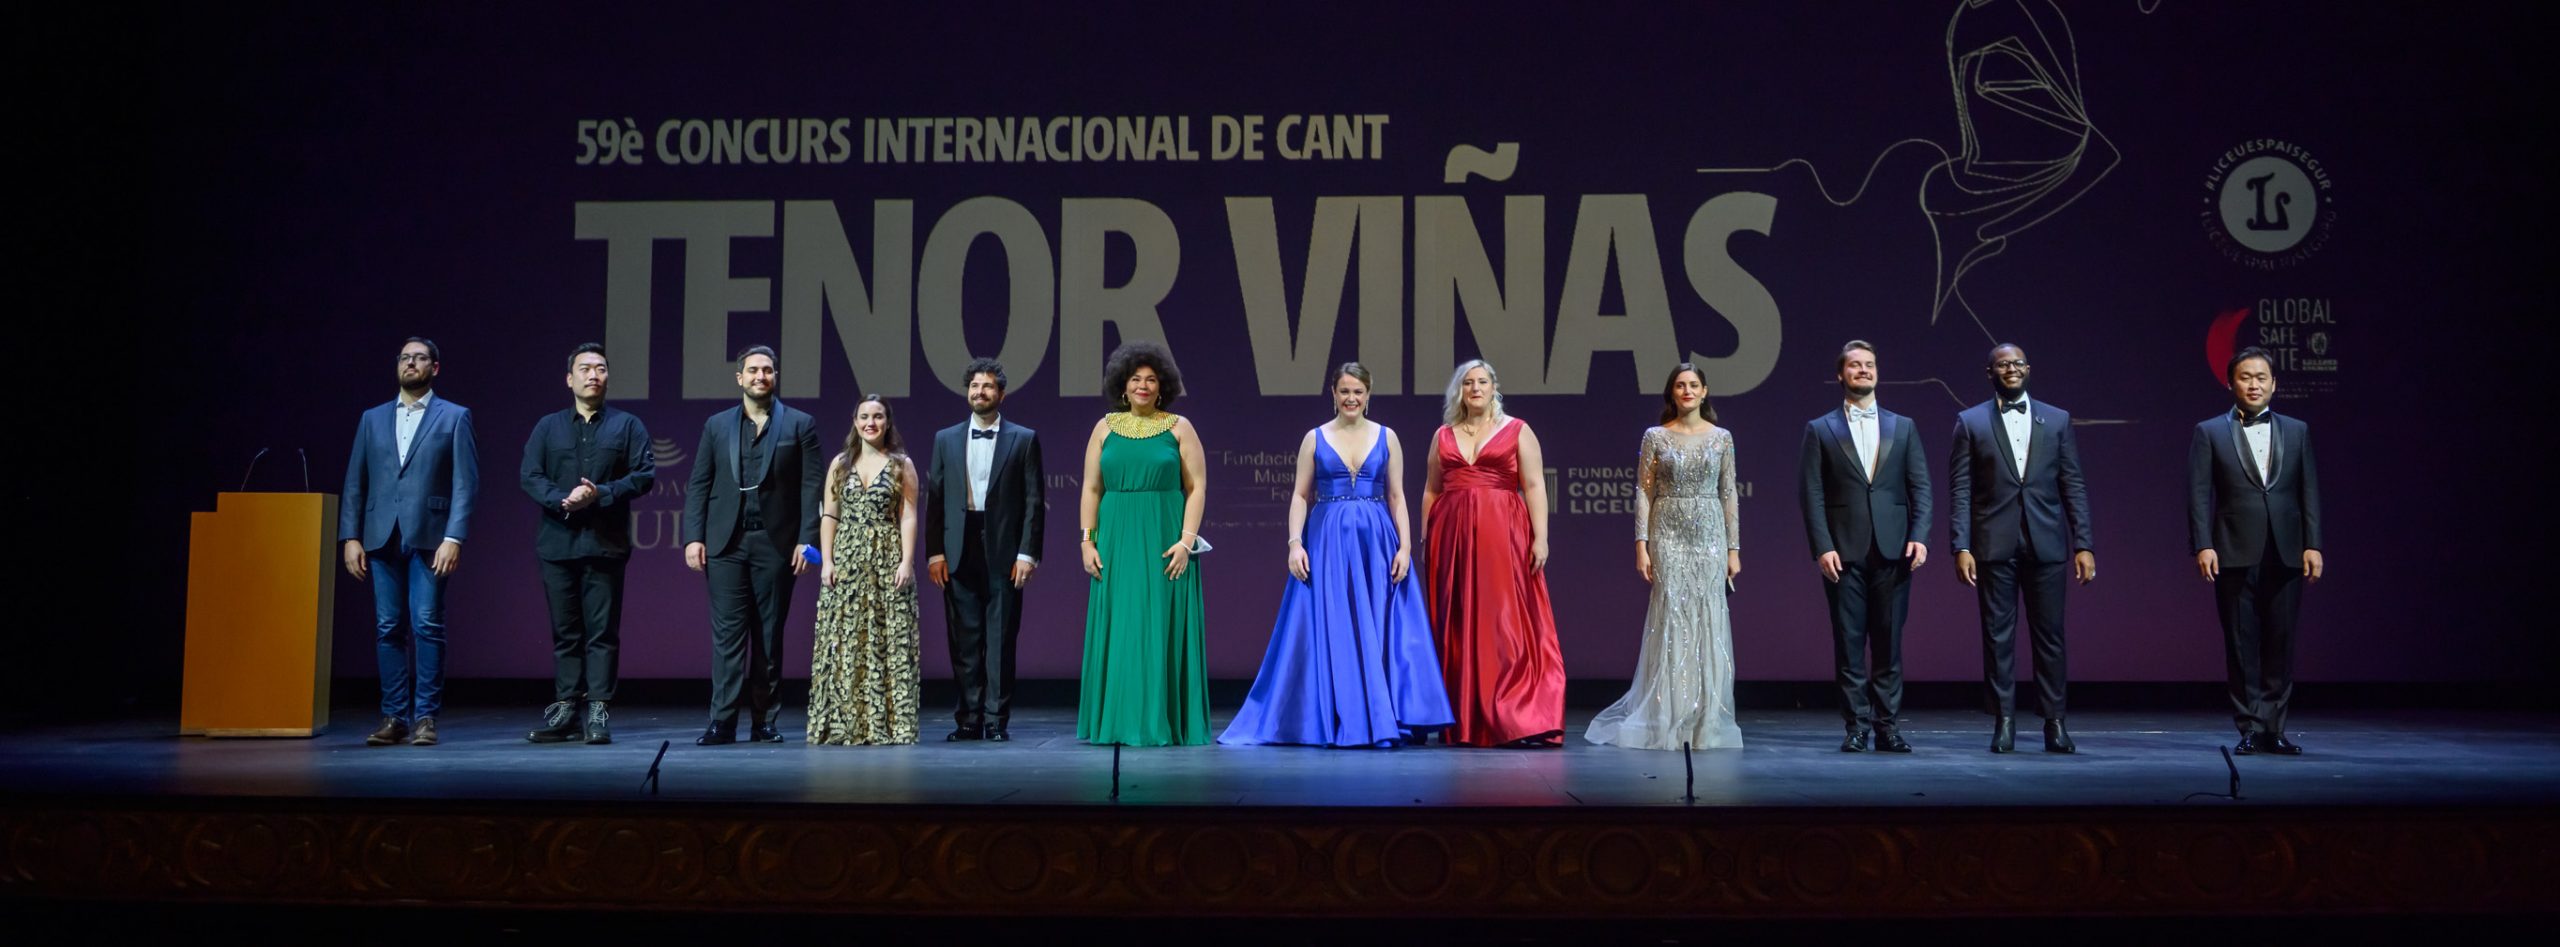 La soprano británica Gemma Summerfield gana el Primer Premio Tenor Viñas